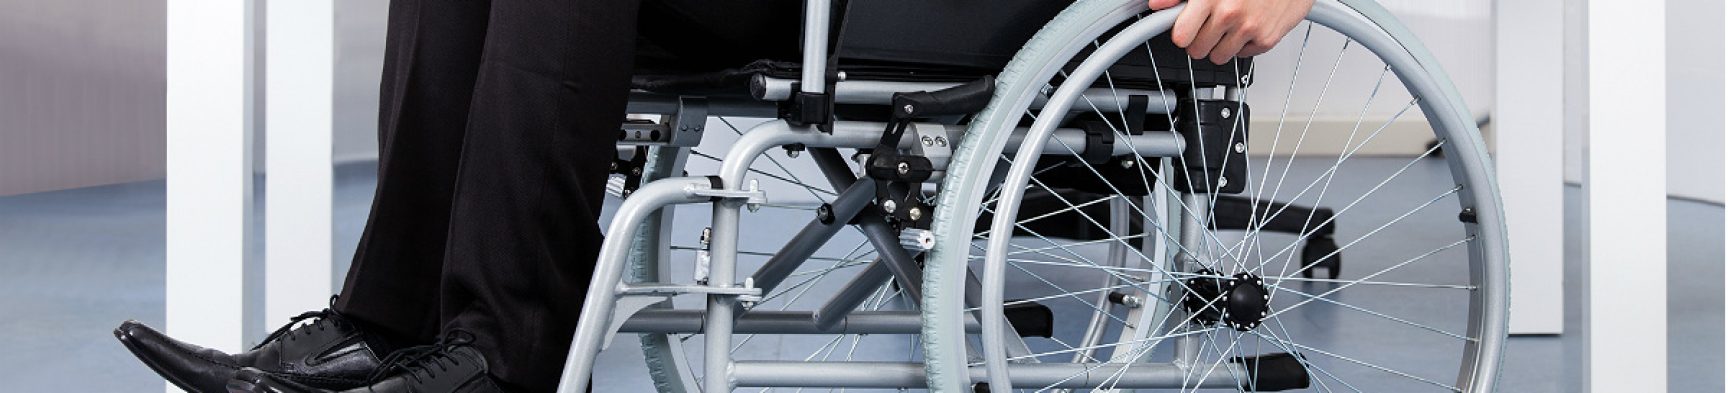 ONS foi penalizada por descumprir regra que prevê a contratação de um número mínimo de pessoas com deficiência ou reabilitadas.